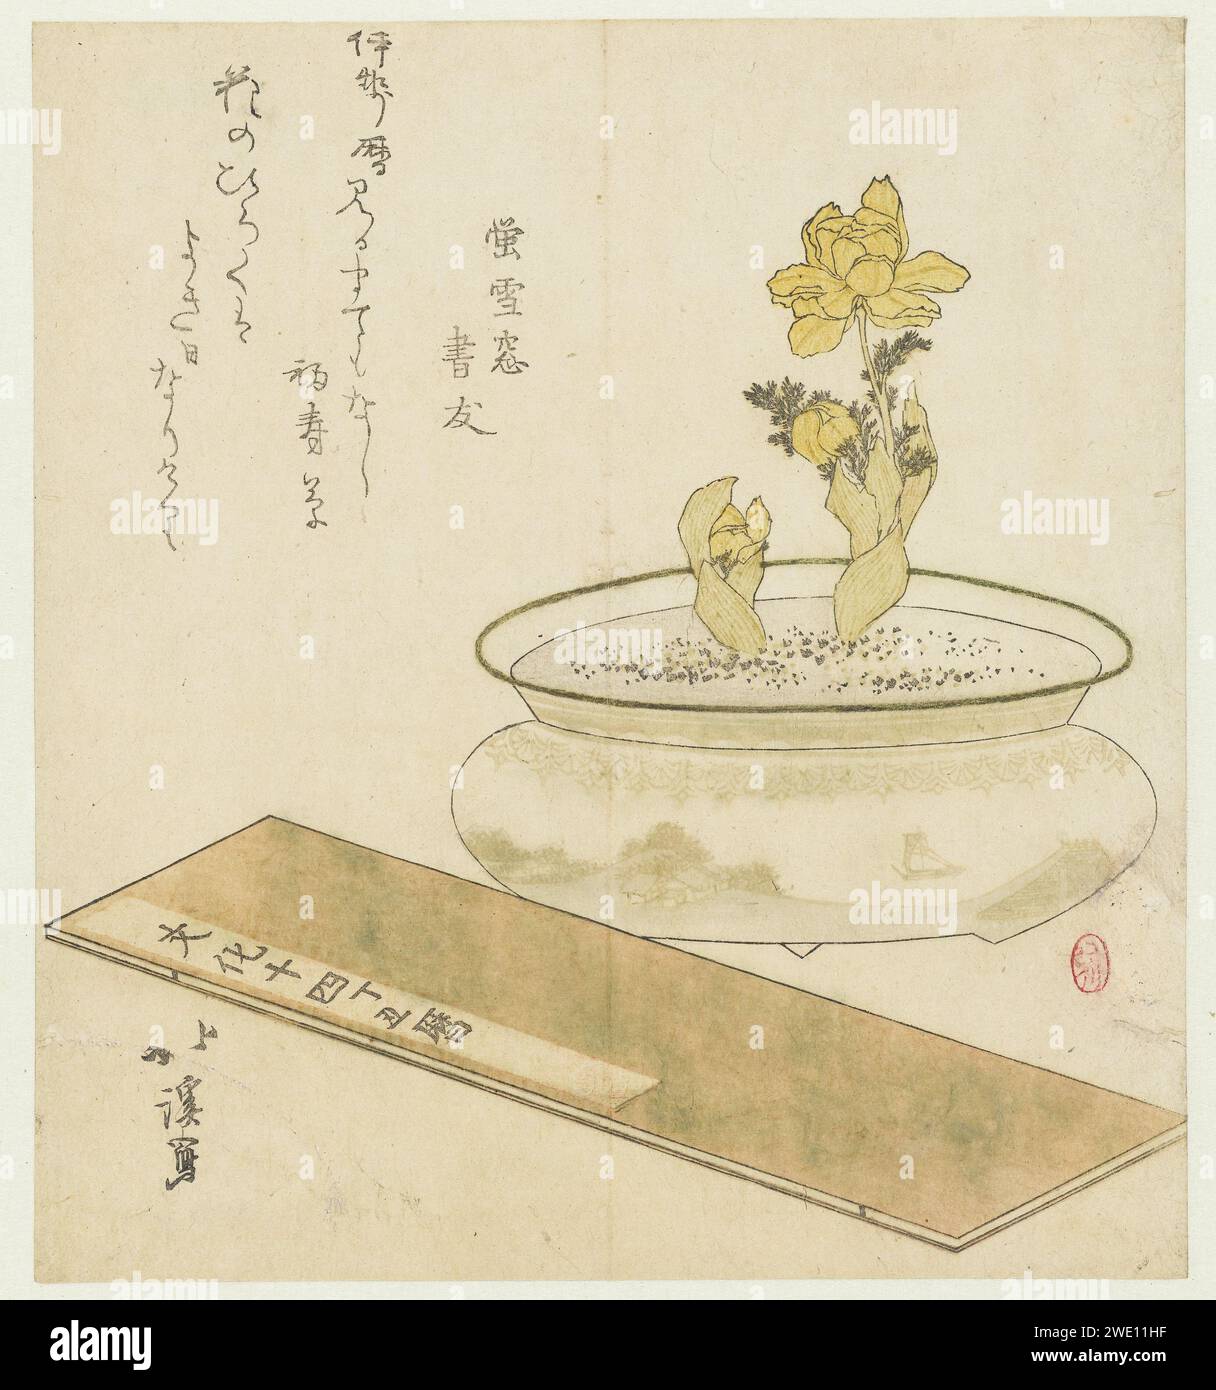 Topfpflanze und Almanach, Totoya Hokkei, 1817 Ein Porzellantopf mit einer Frühlingsanemone und einem Almanach im Vordergrund. Der Topf ist mit einem Boot dekoriert, das auf einem Fluss schwimmt. Der Almanach trägt den Titel „Kalender für Bunka 14, Jahr des OS“. Mit einem Gedicht. Japanisches Papier farbiger Holzschnitt Stockfoto